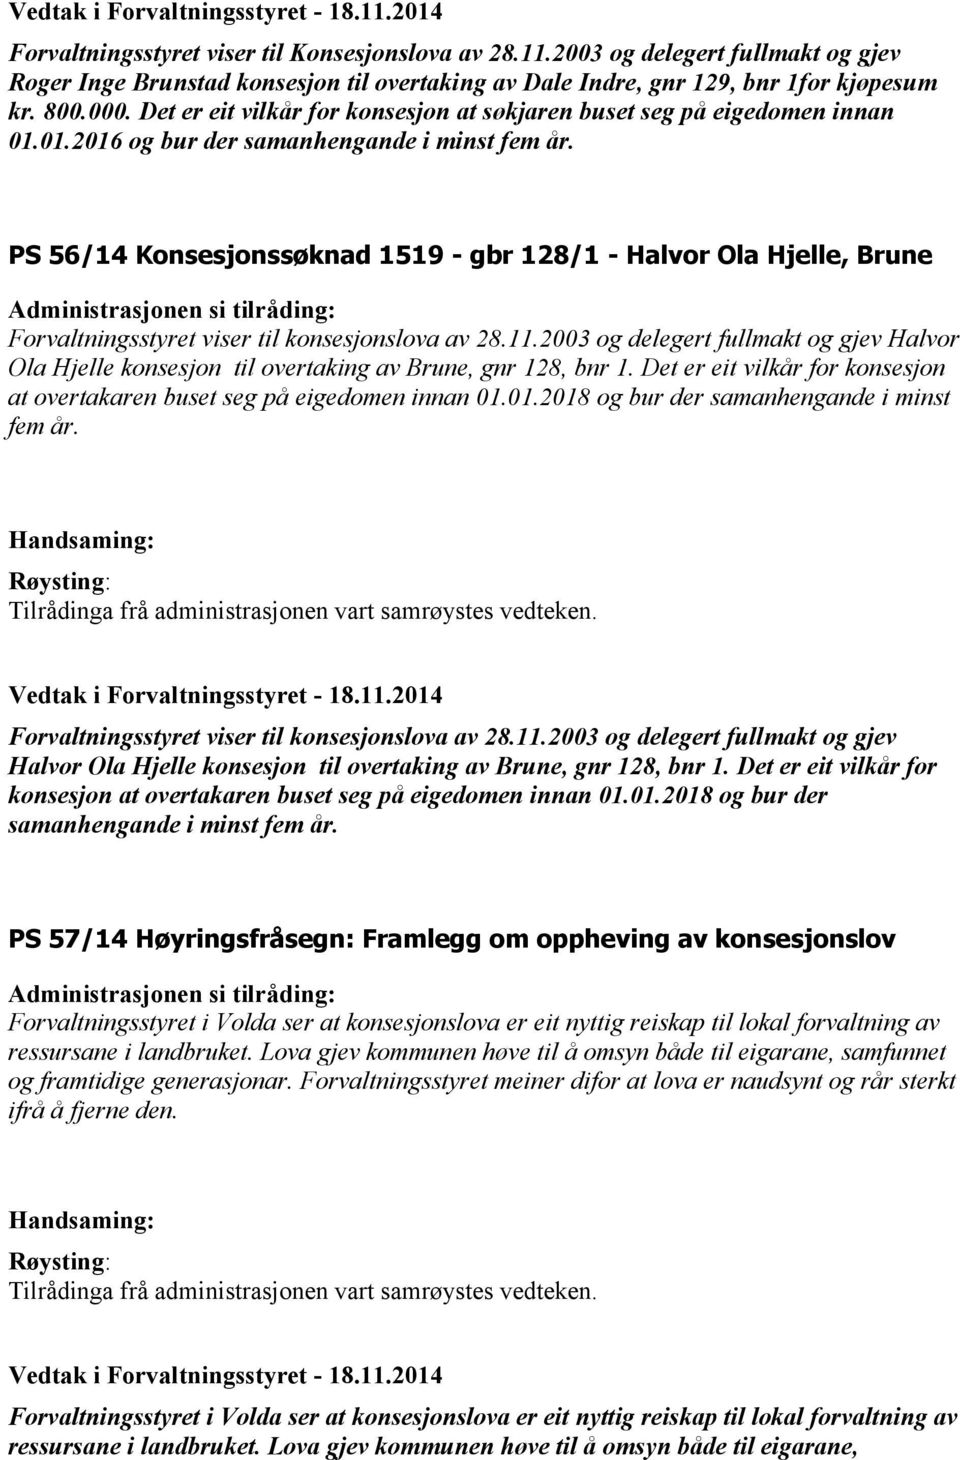 PS 56/14 Konsesjonssøknad 1519 - gbr 128/1 - Halvor Ola Hjelle, Brune Forvaltningsstyret viser til konsesjonslova av 28.11.